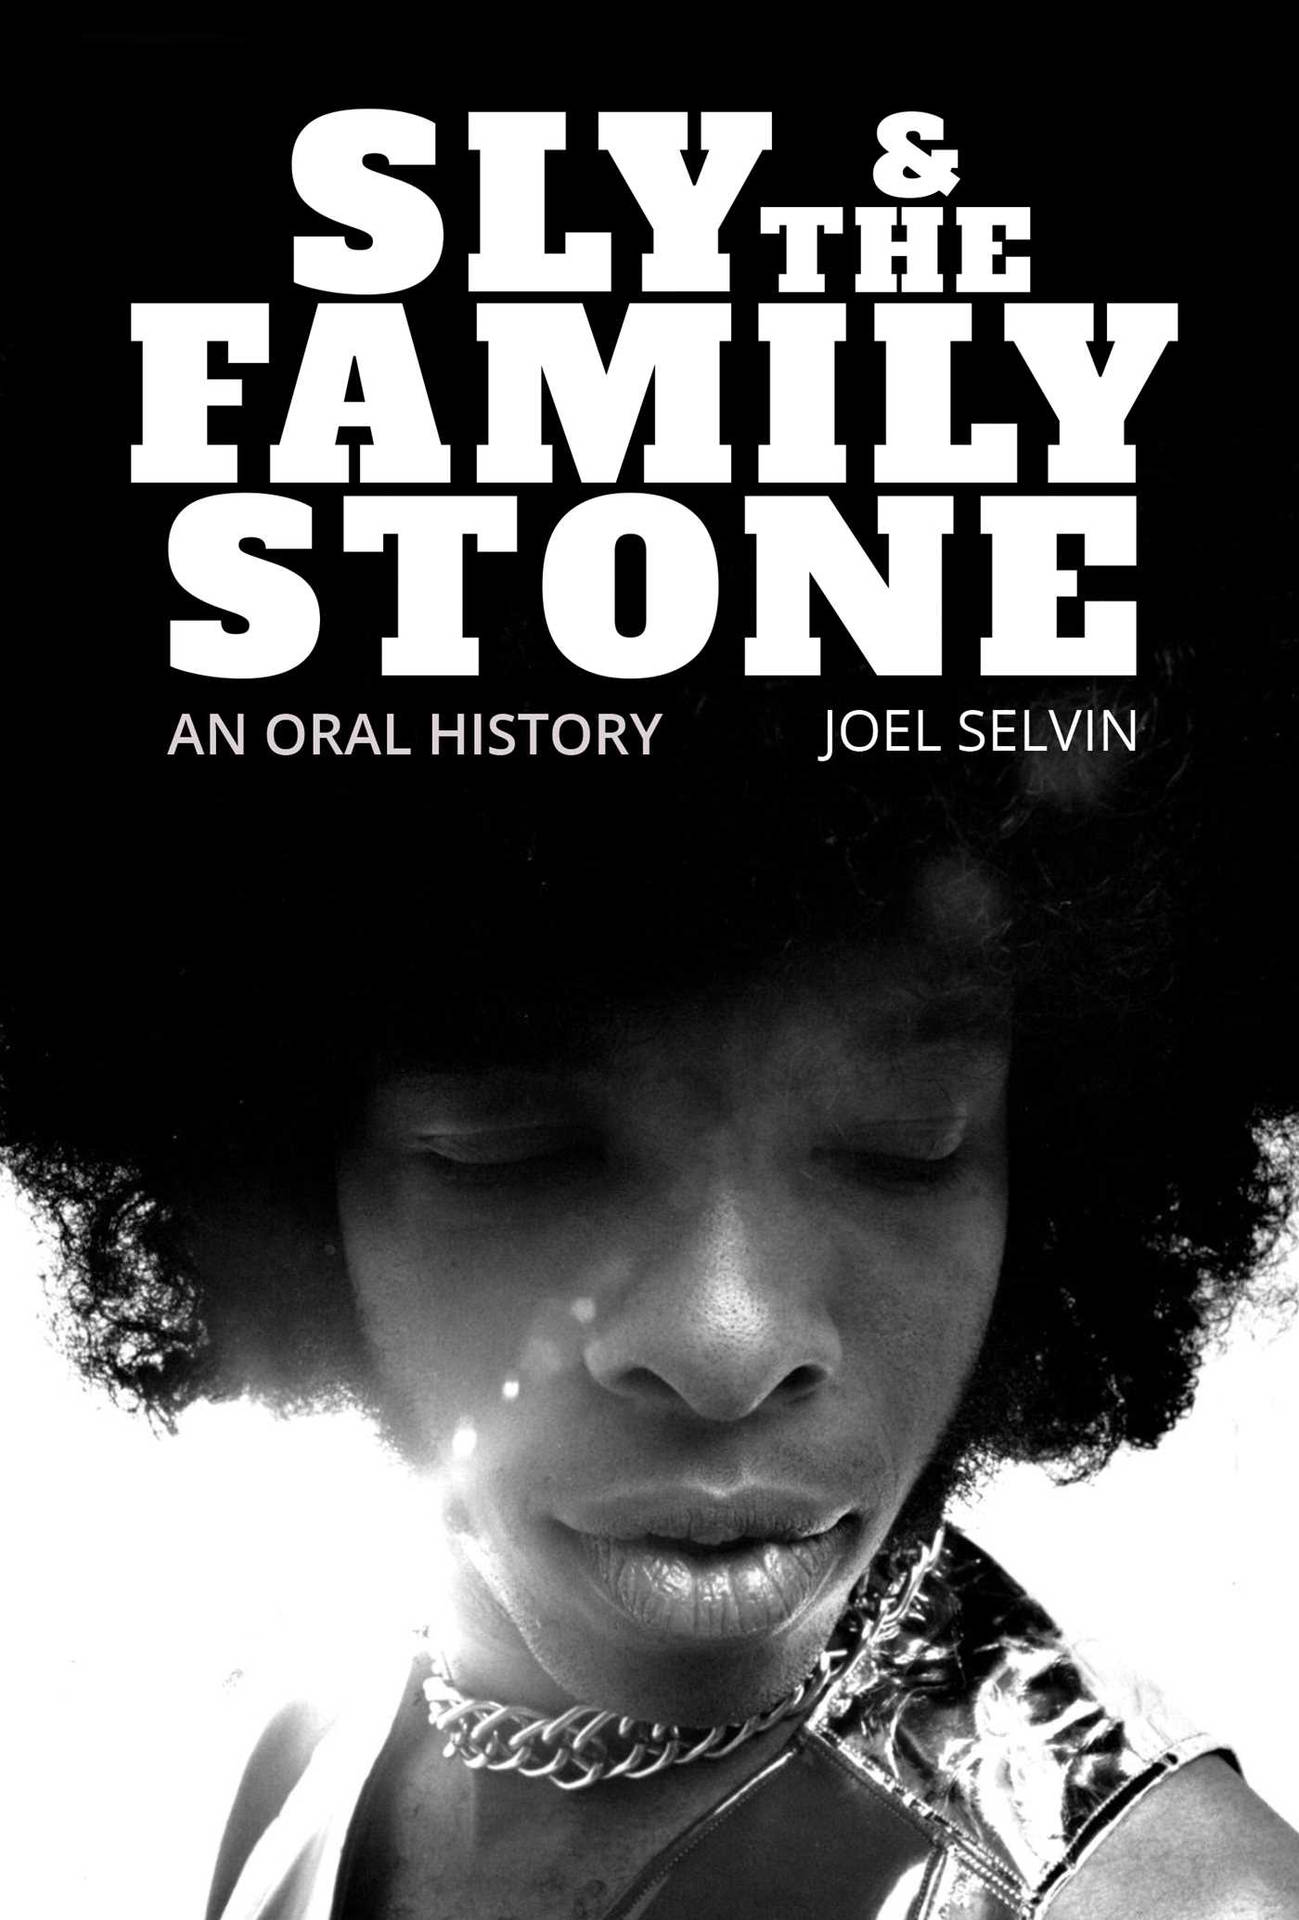 Copertinaleggendaria Dell'album Di Sly And The Family Stone Sfondo